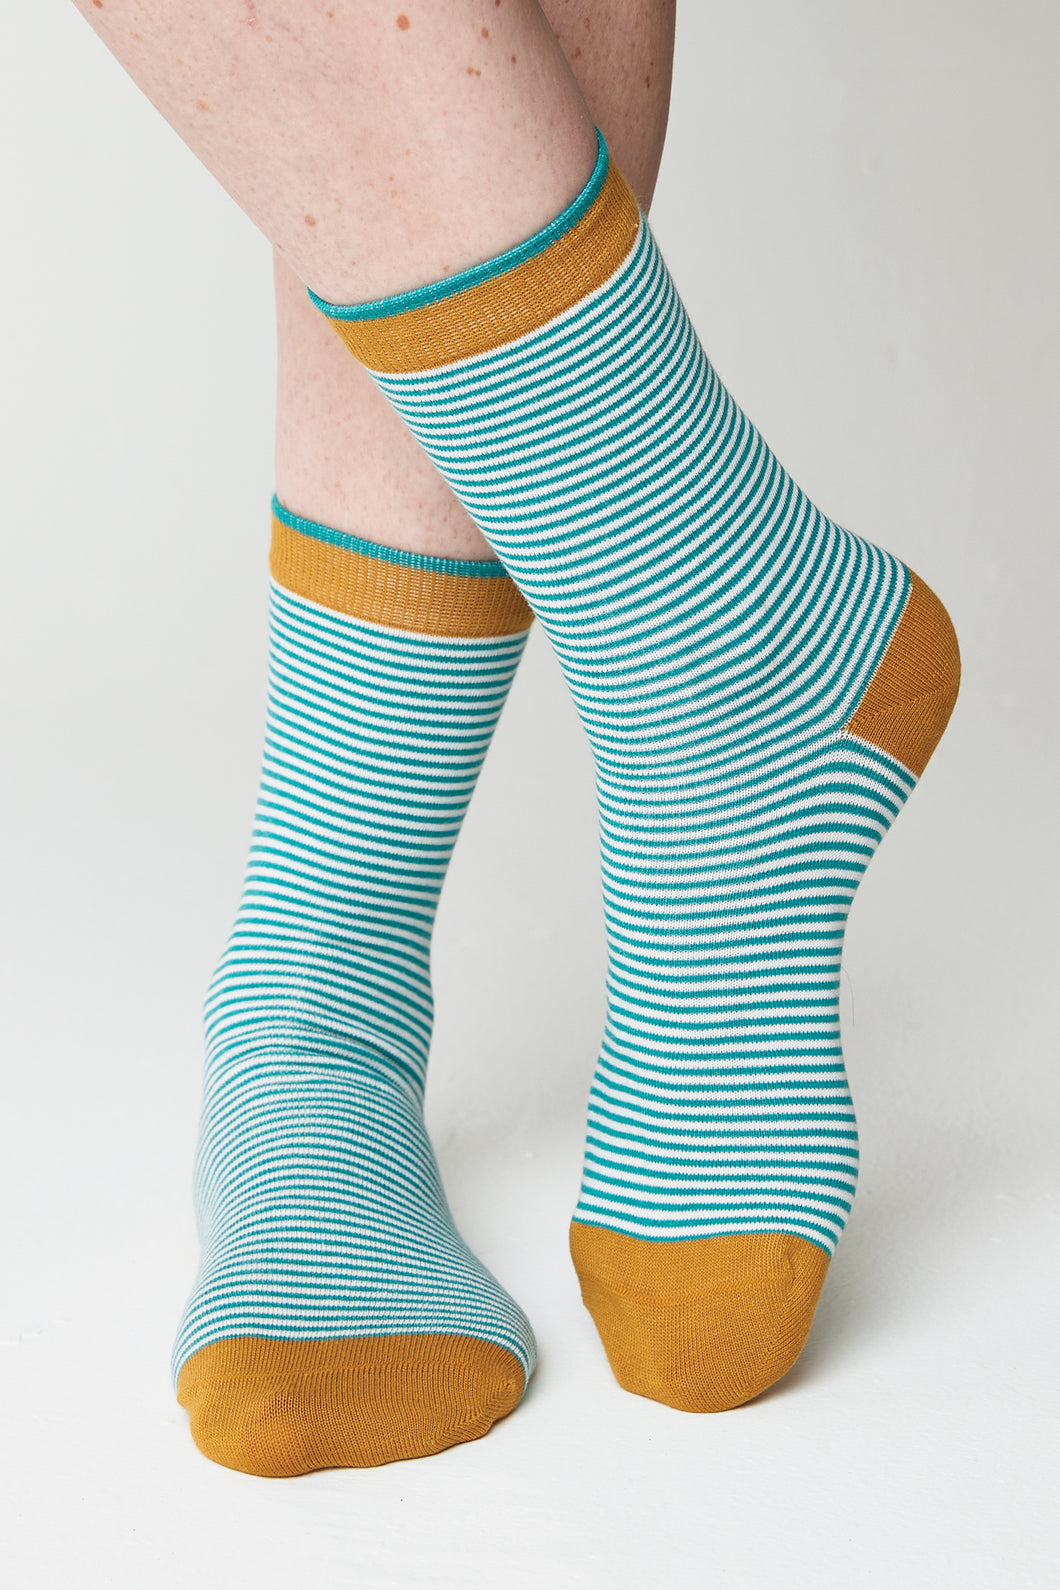 Nomads - Bamboo Stripe Socks - Ivory